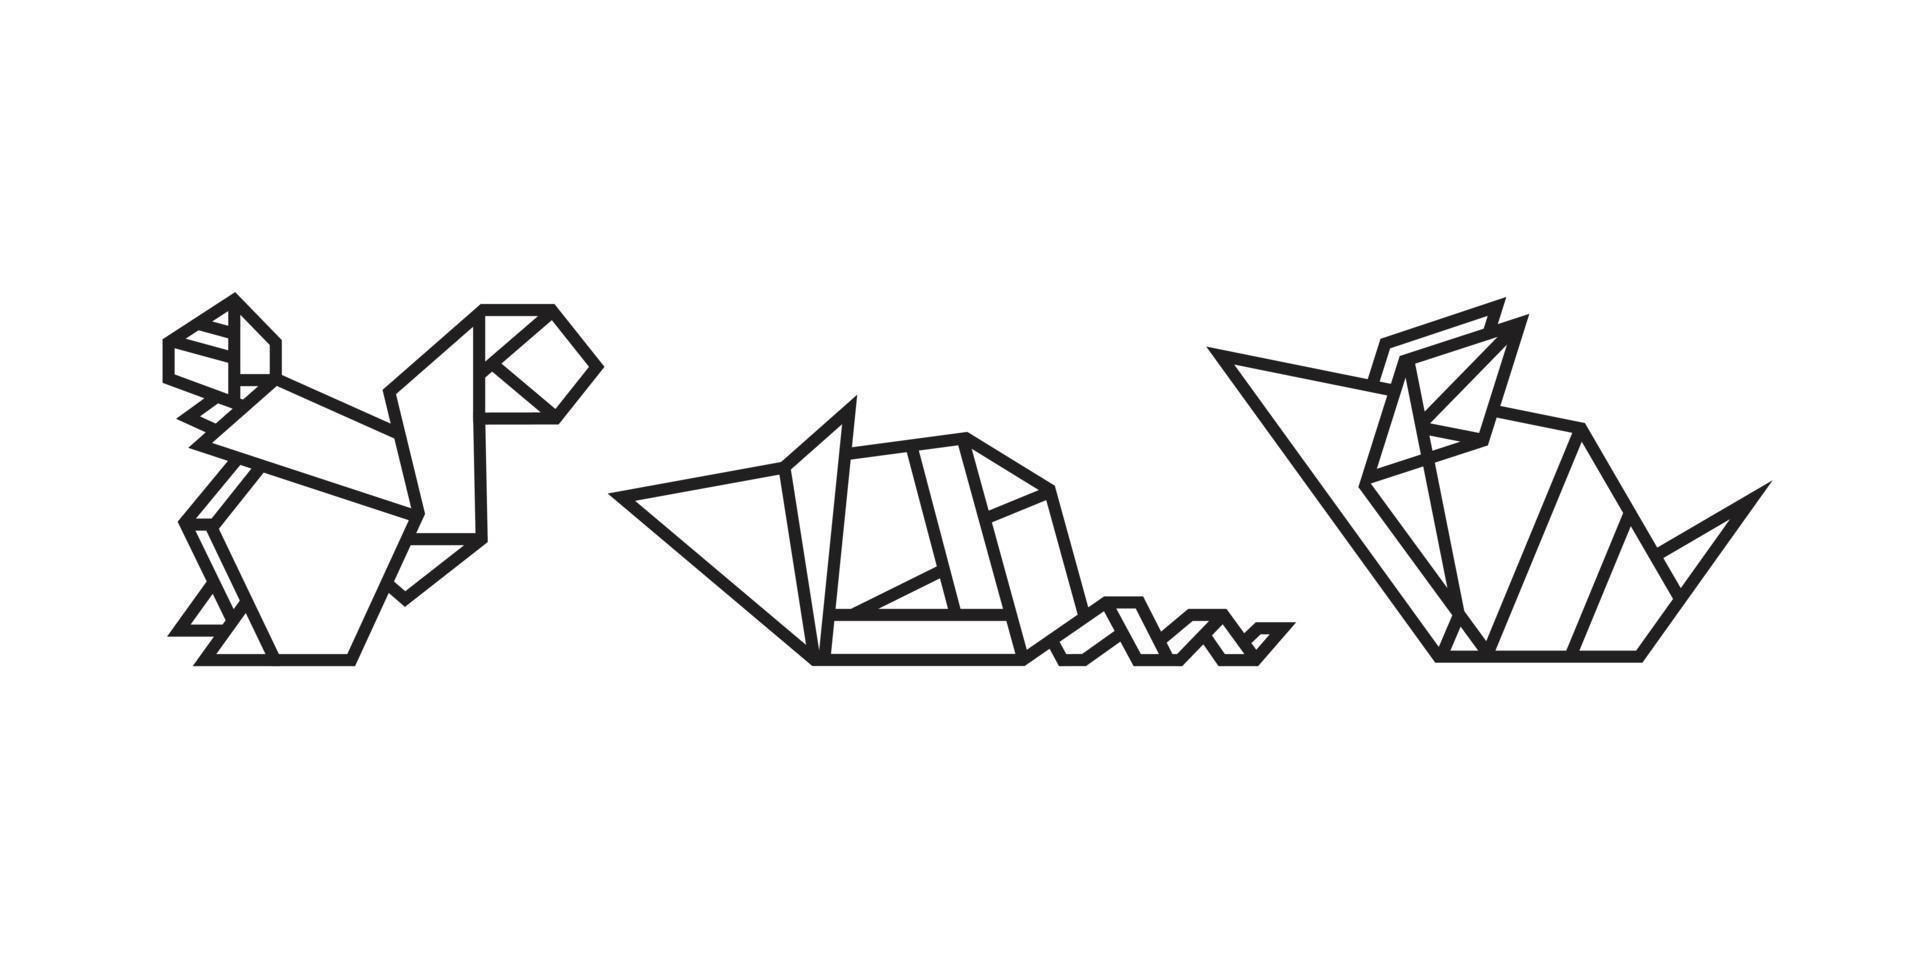 illustraties van knaagdieren in origami-stijl vector